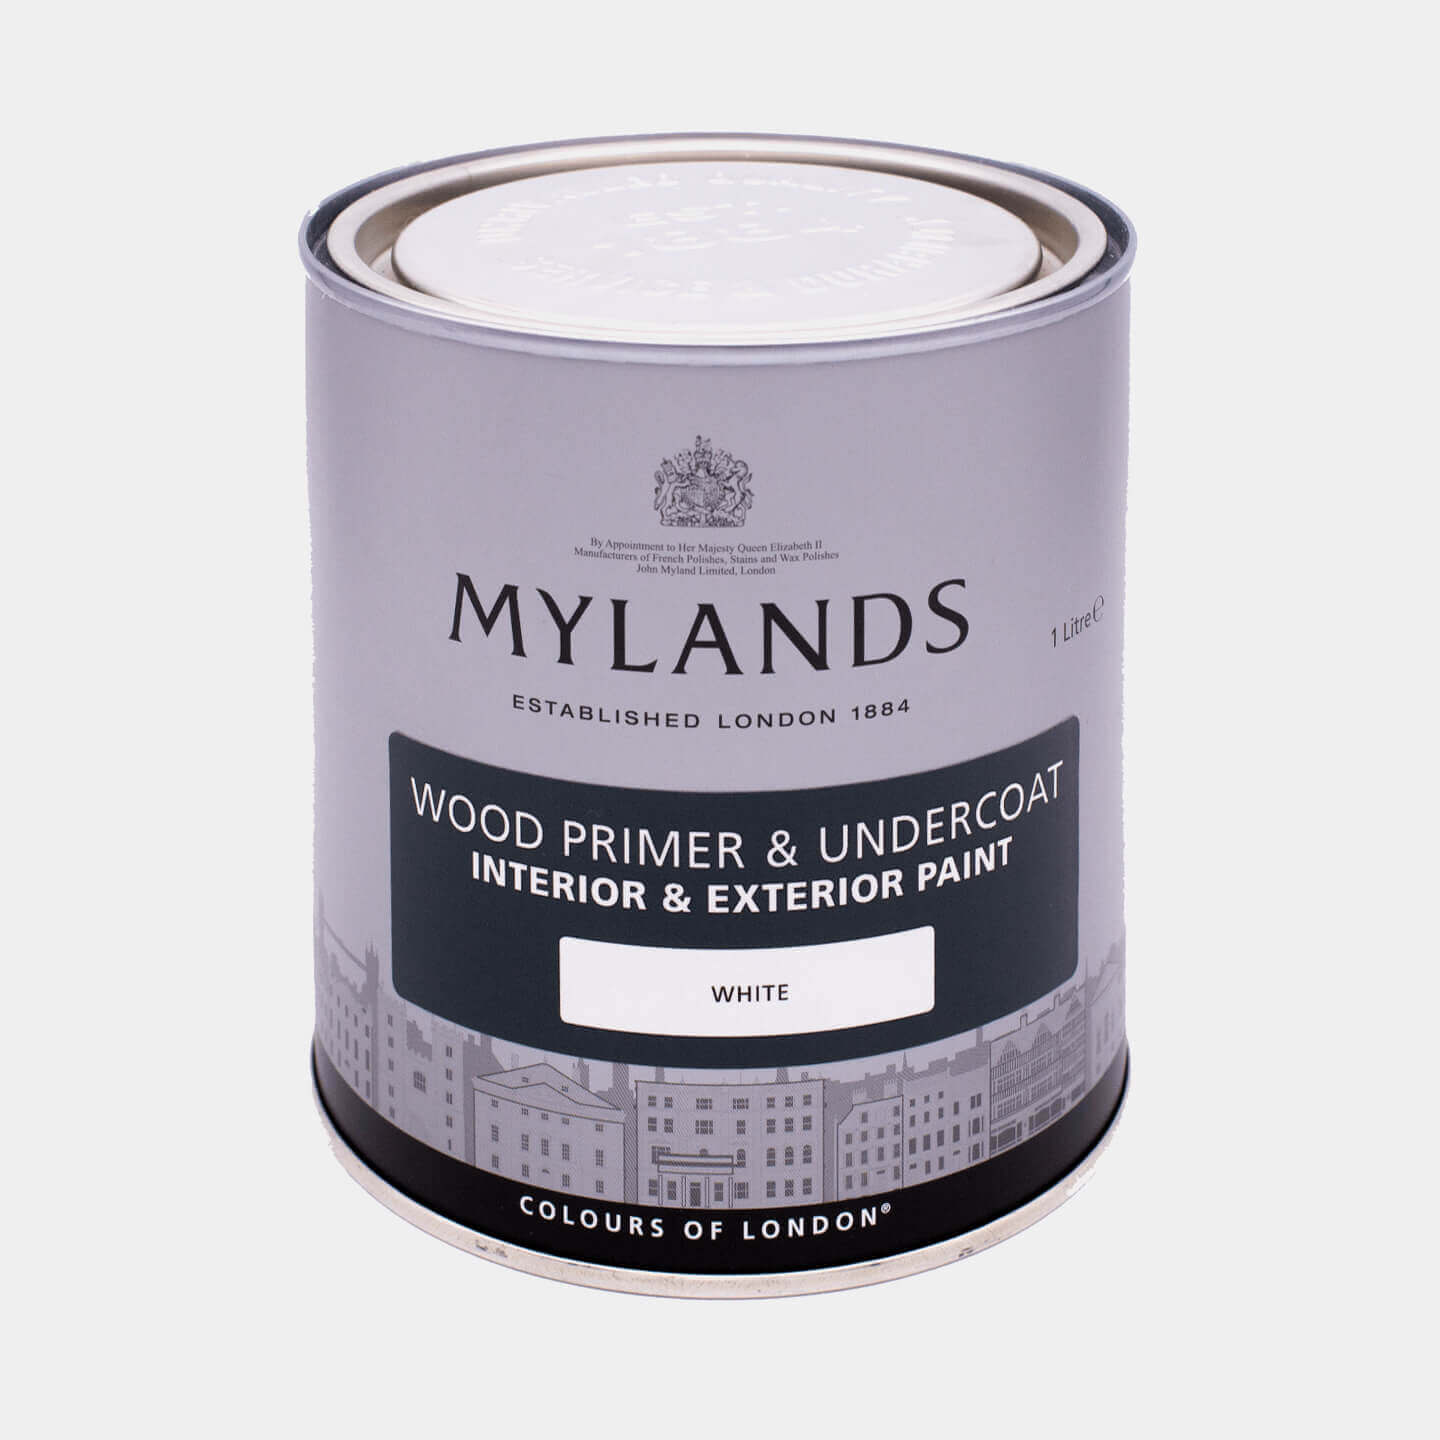 Mylands Wood Primer & Undercoat - White, 1L